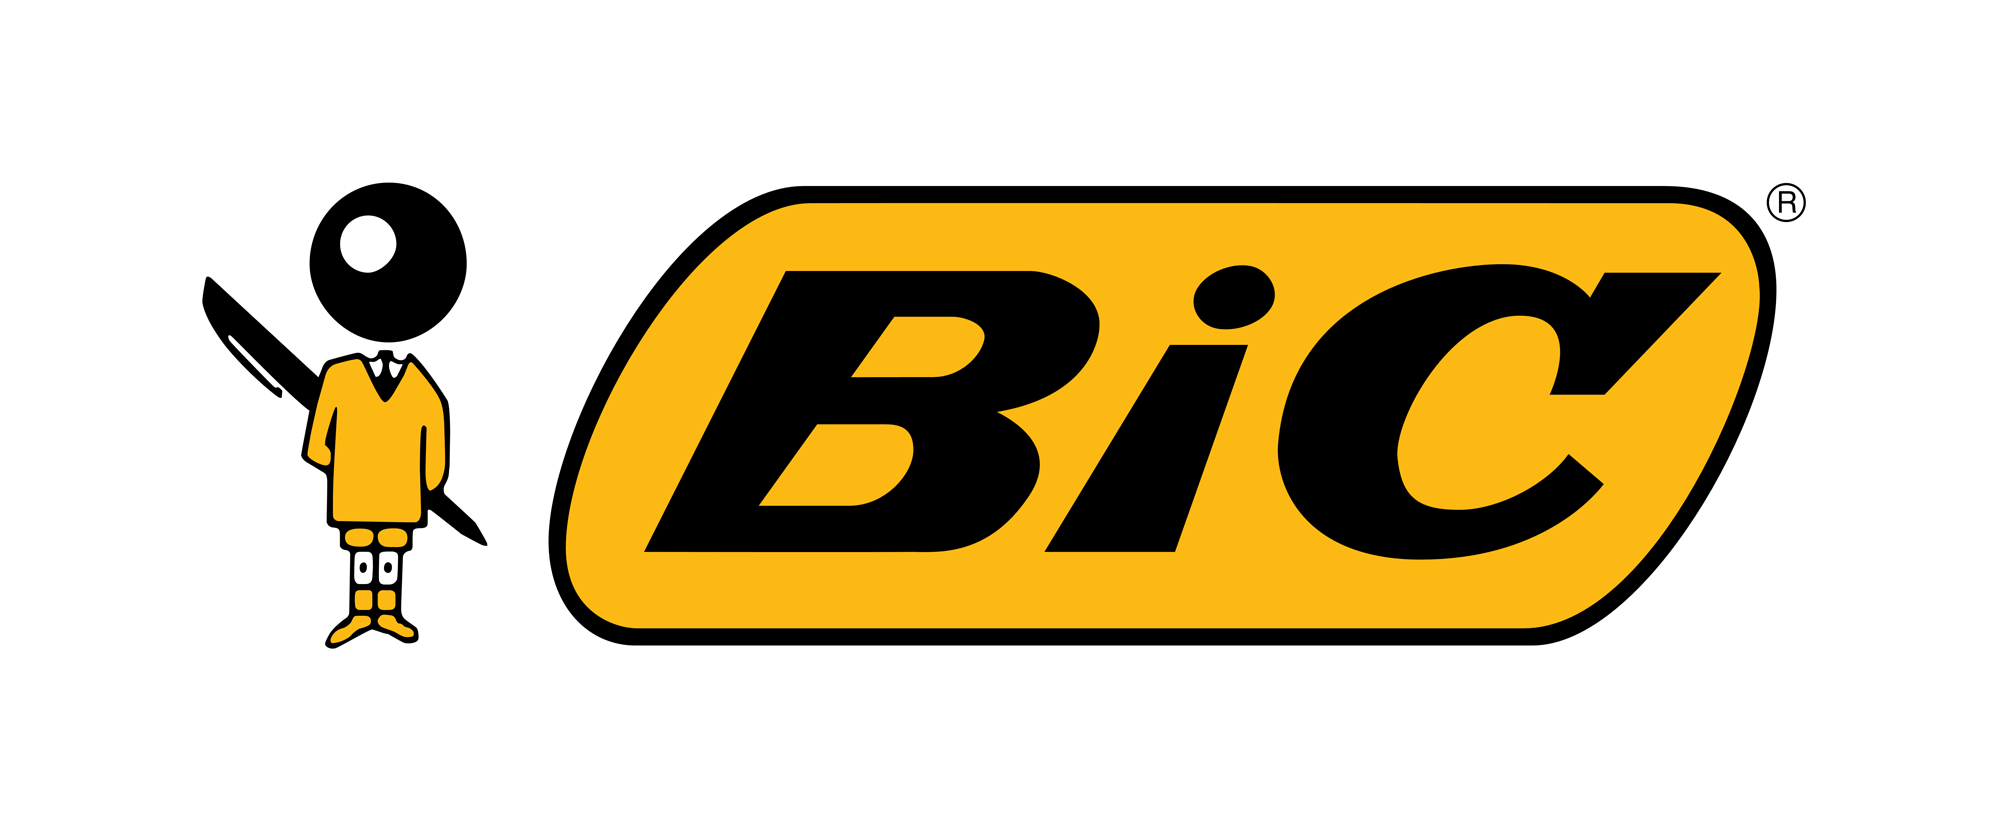 Bic-Logo